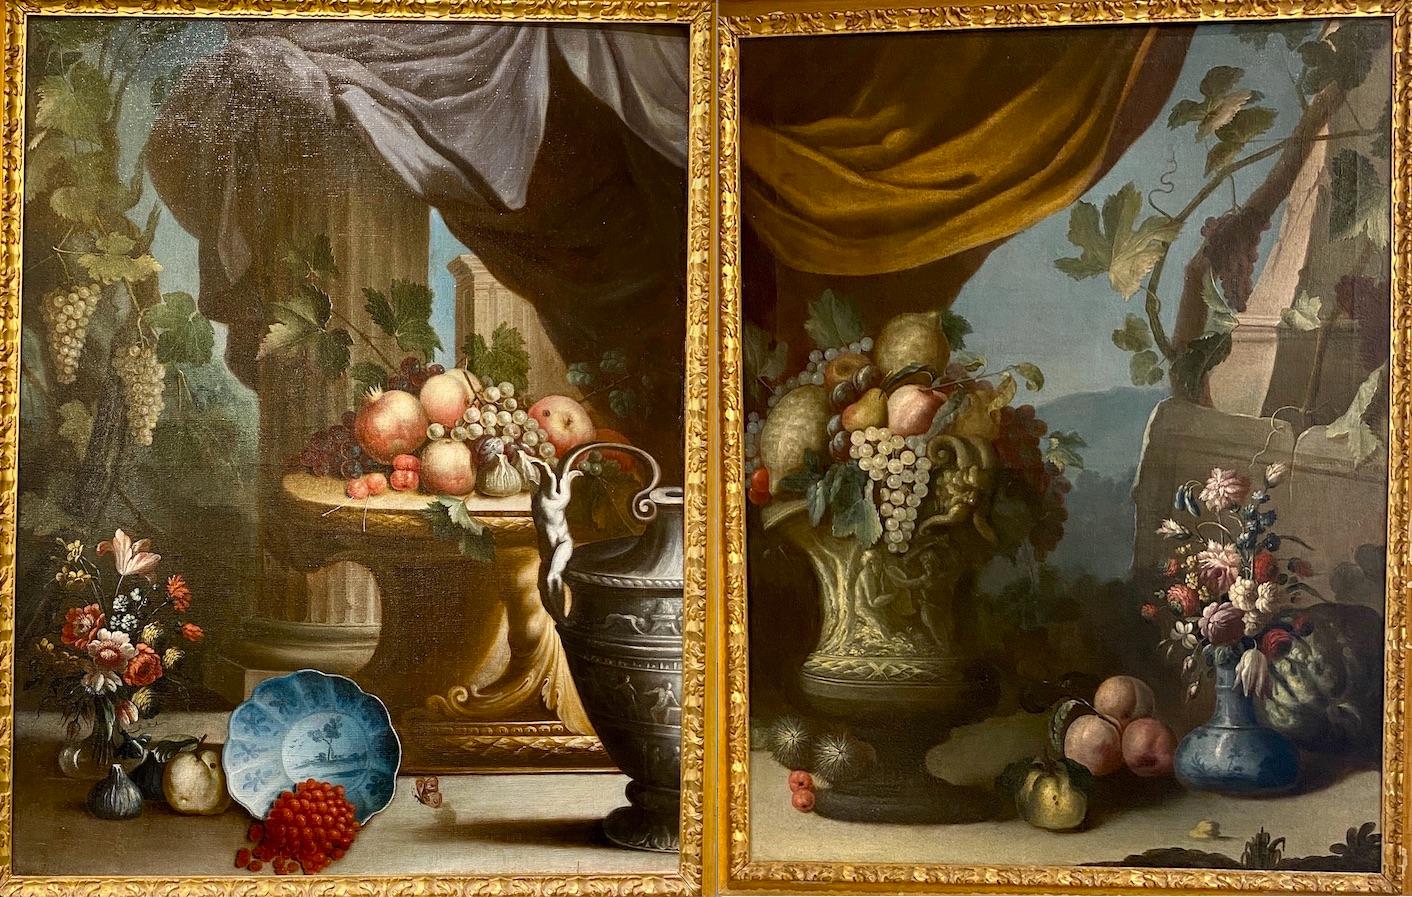 Paire d'exceptionnelles natures mortes italiennes du XVIIIe siècle  - Painting de Unknown